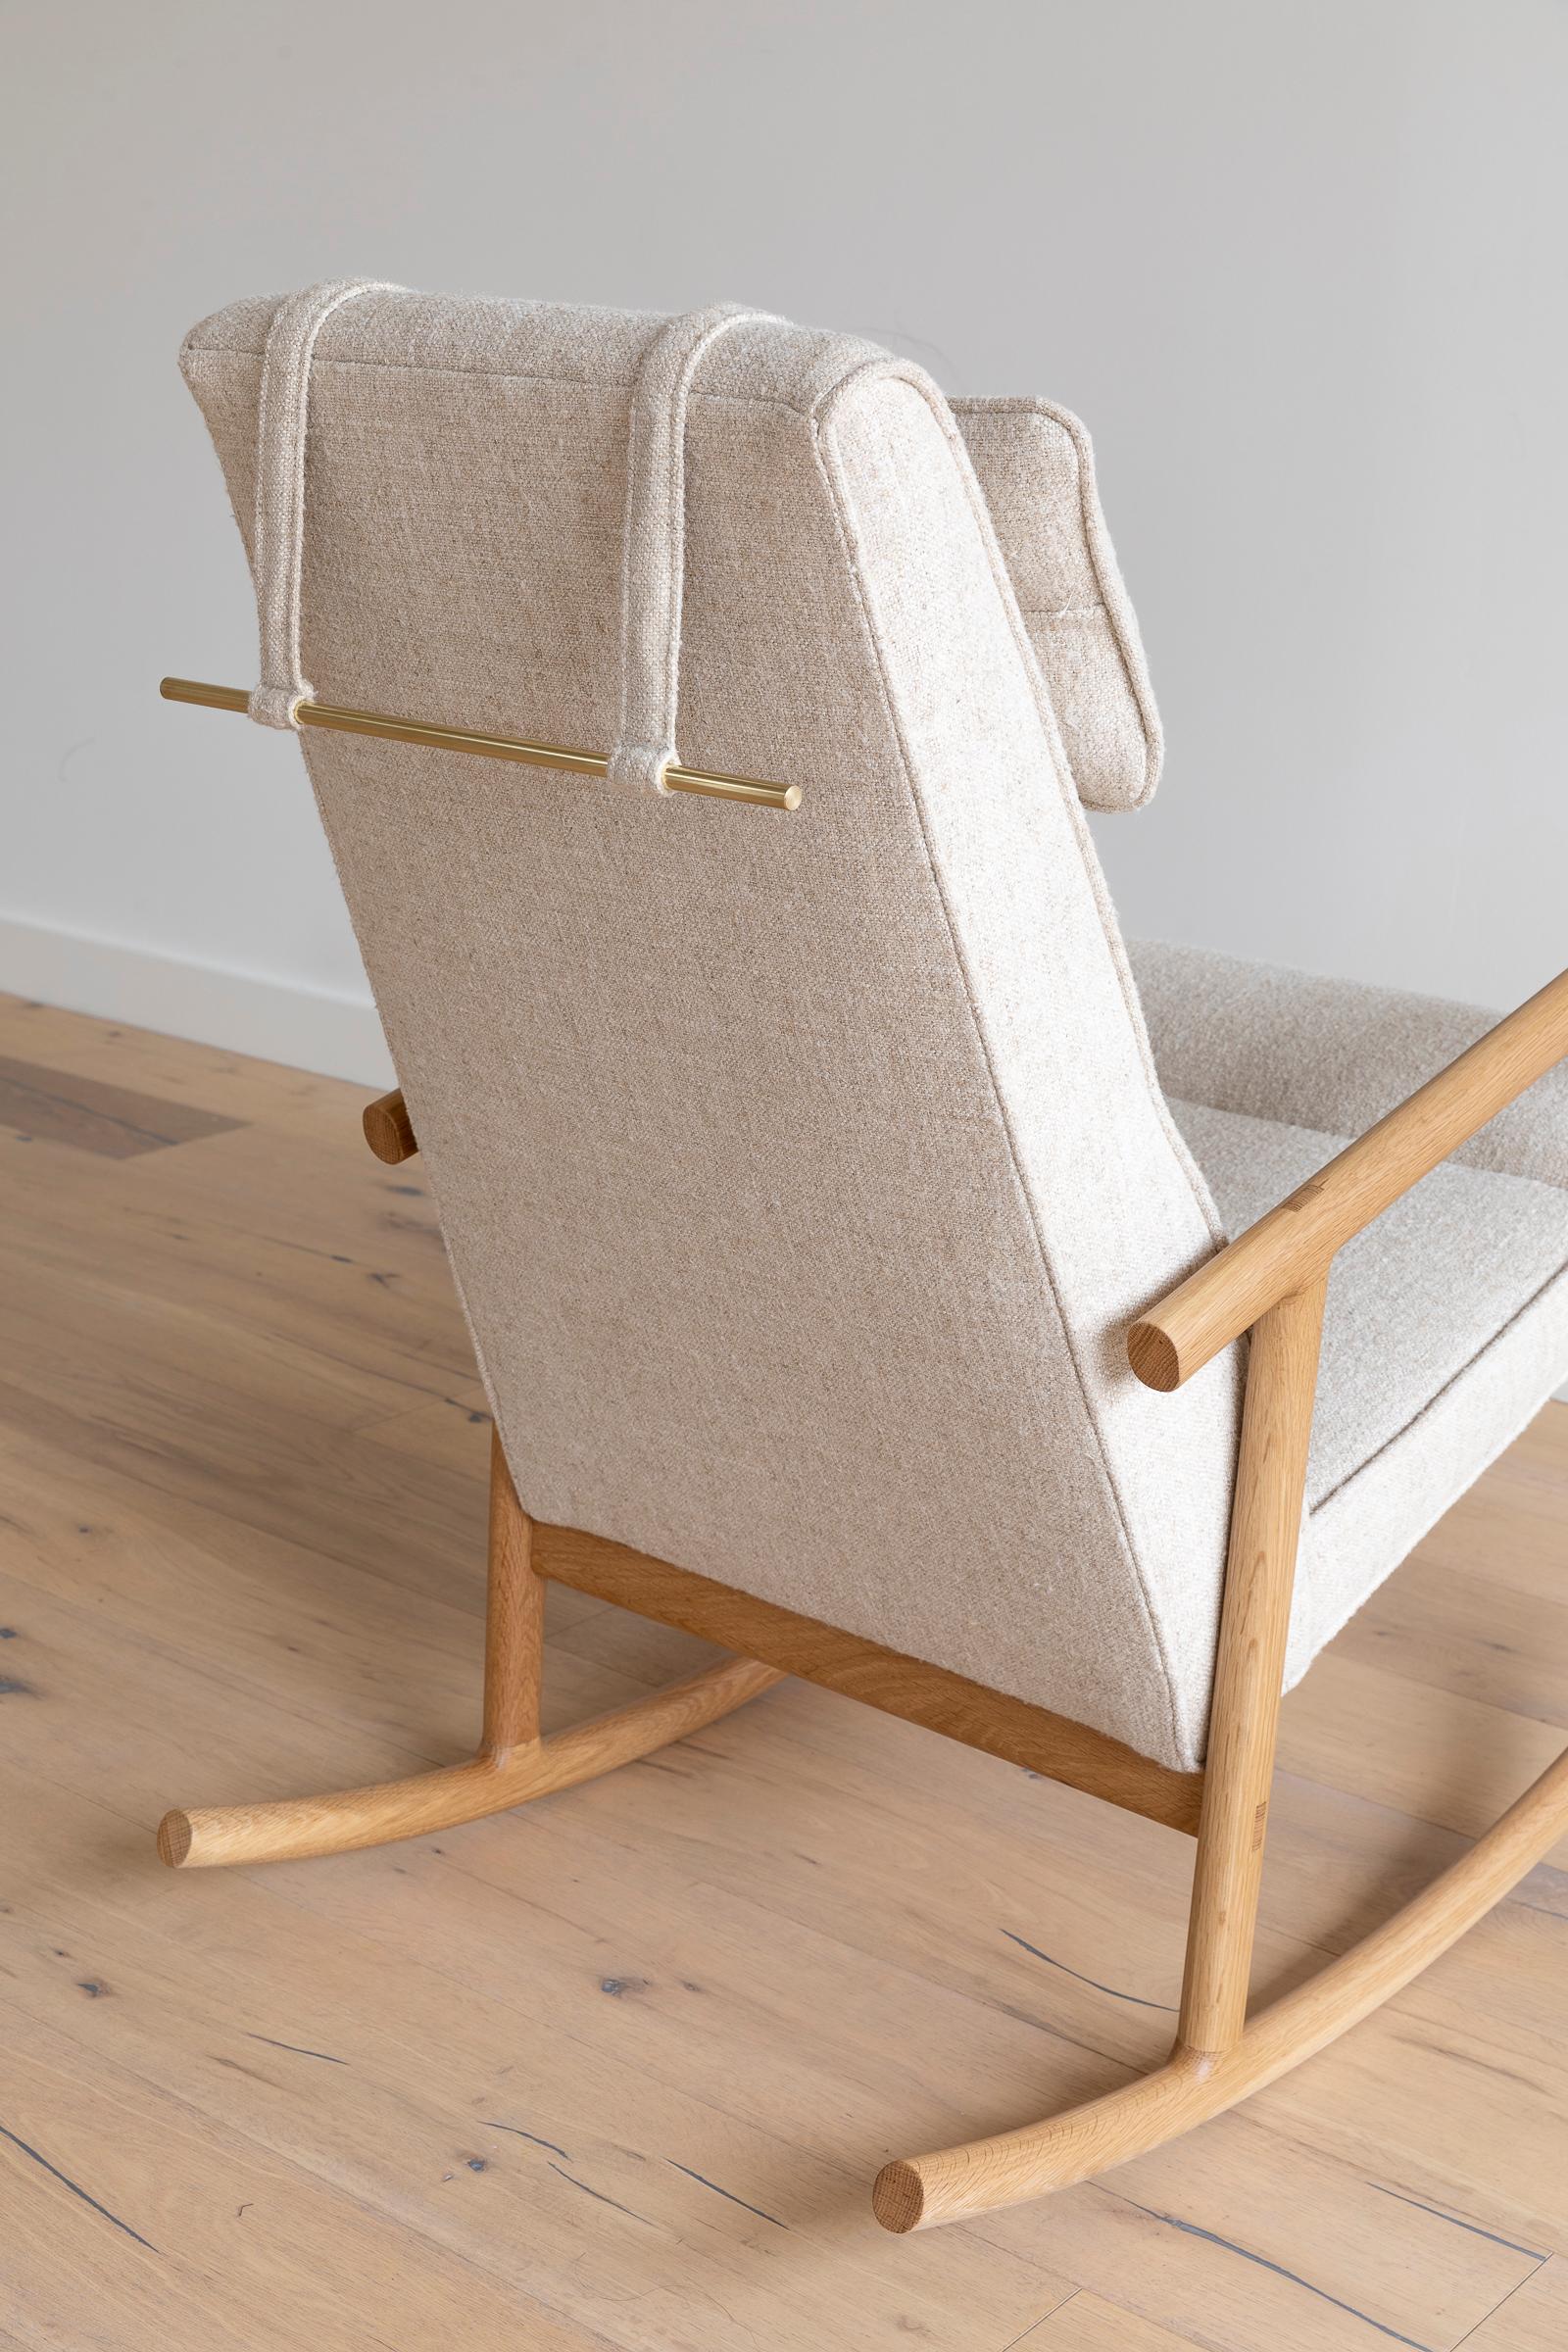 white oak rocking chair